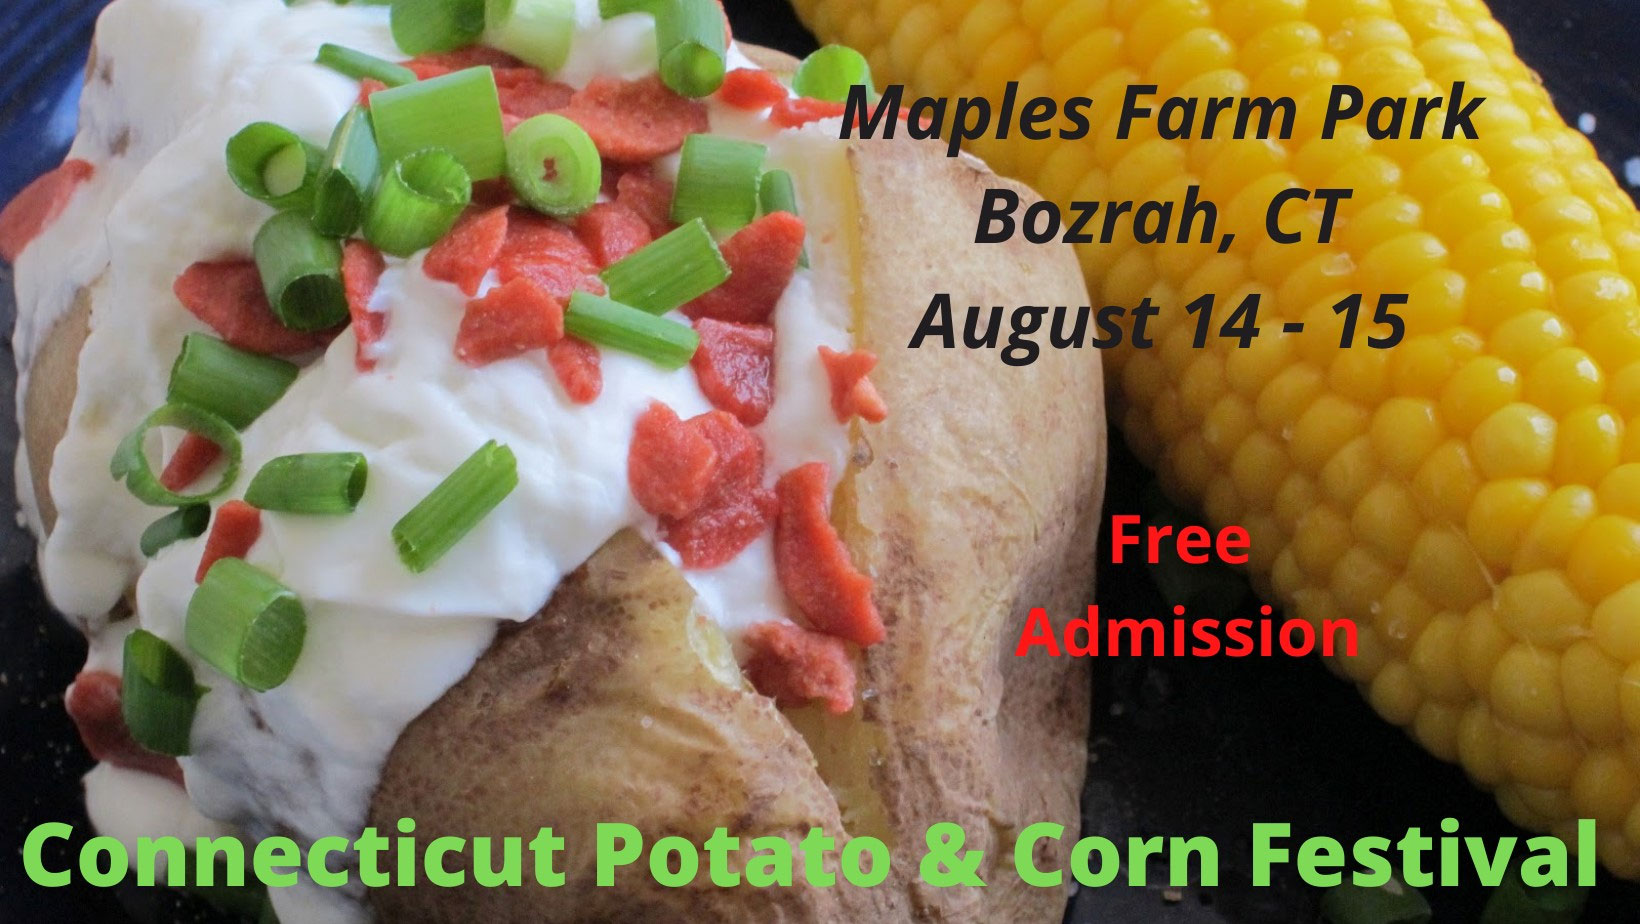 Connecticut Potato & Corn Festival